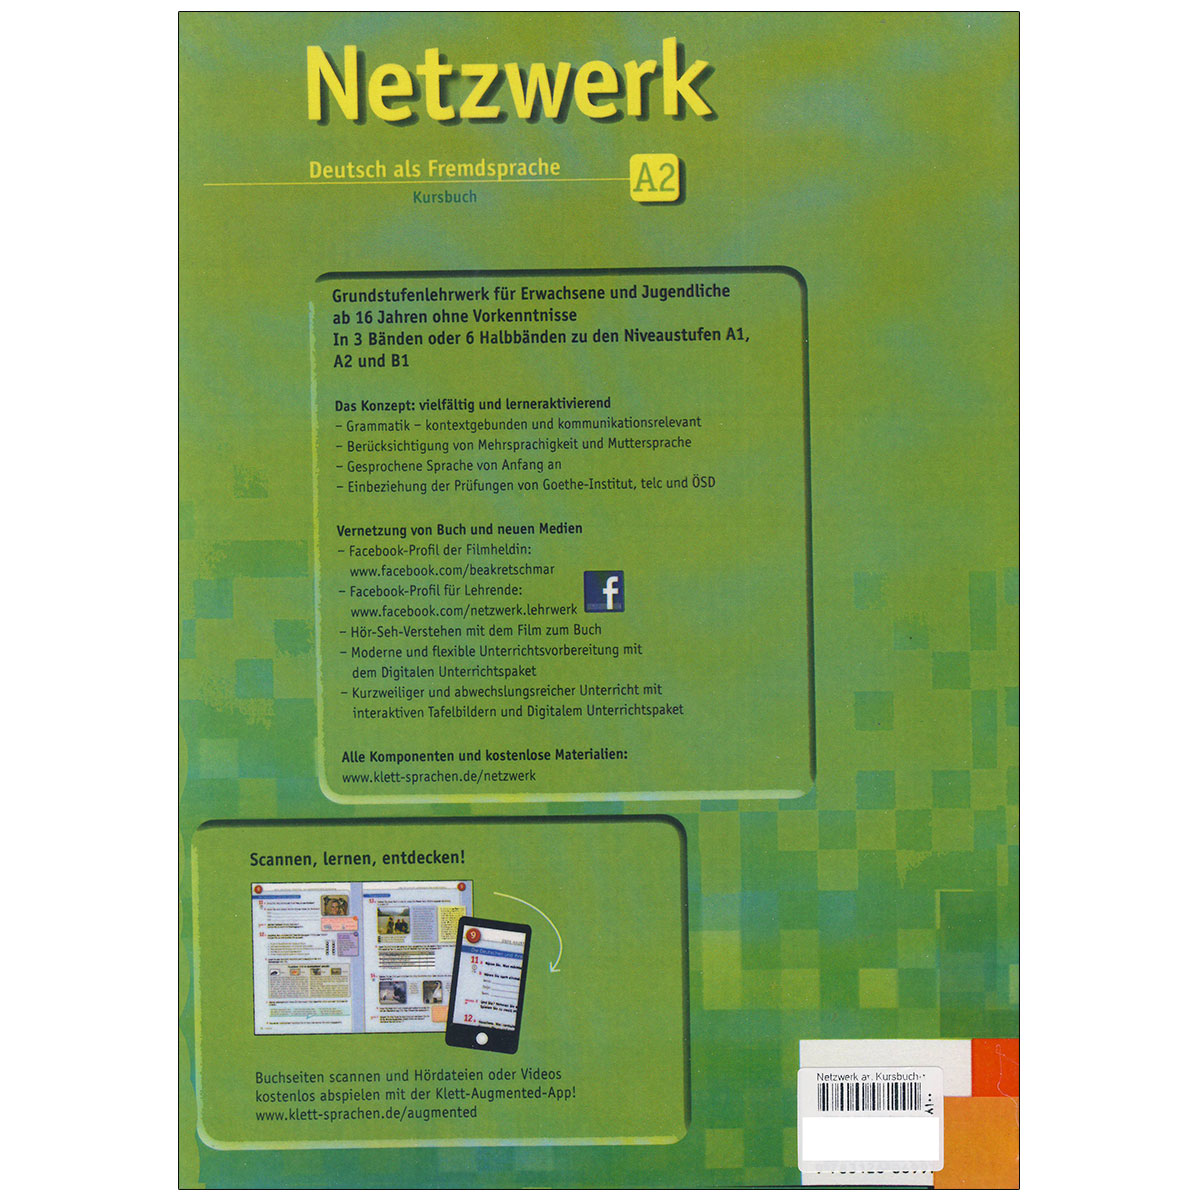 Netzwerk-A2-back